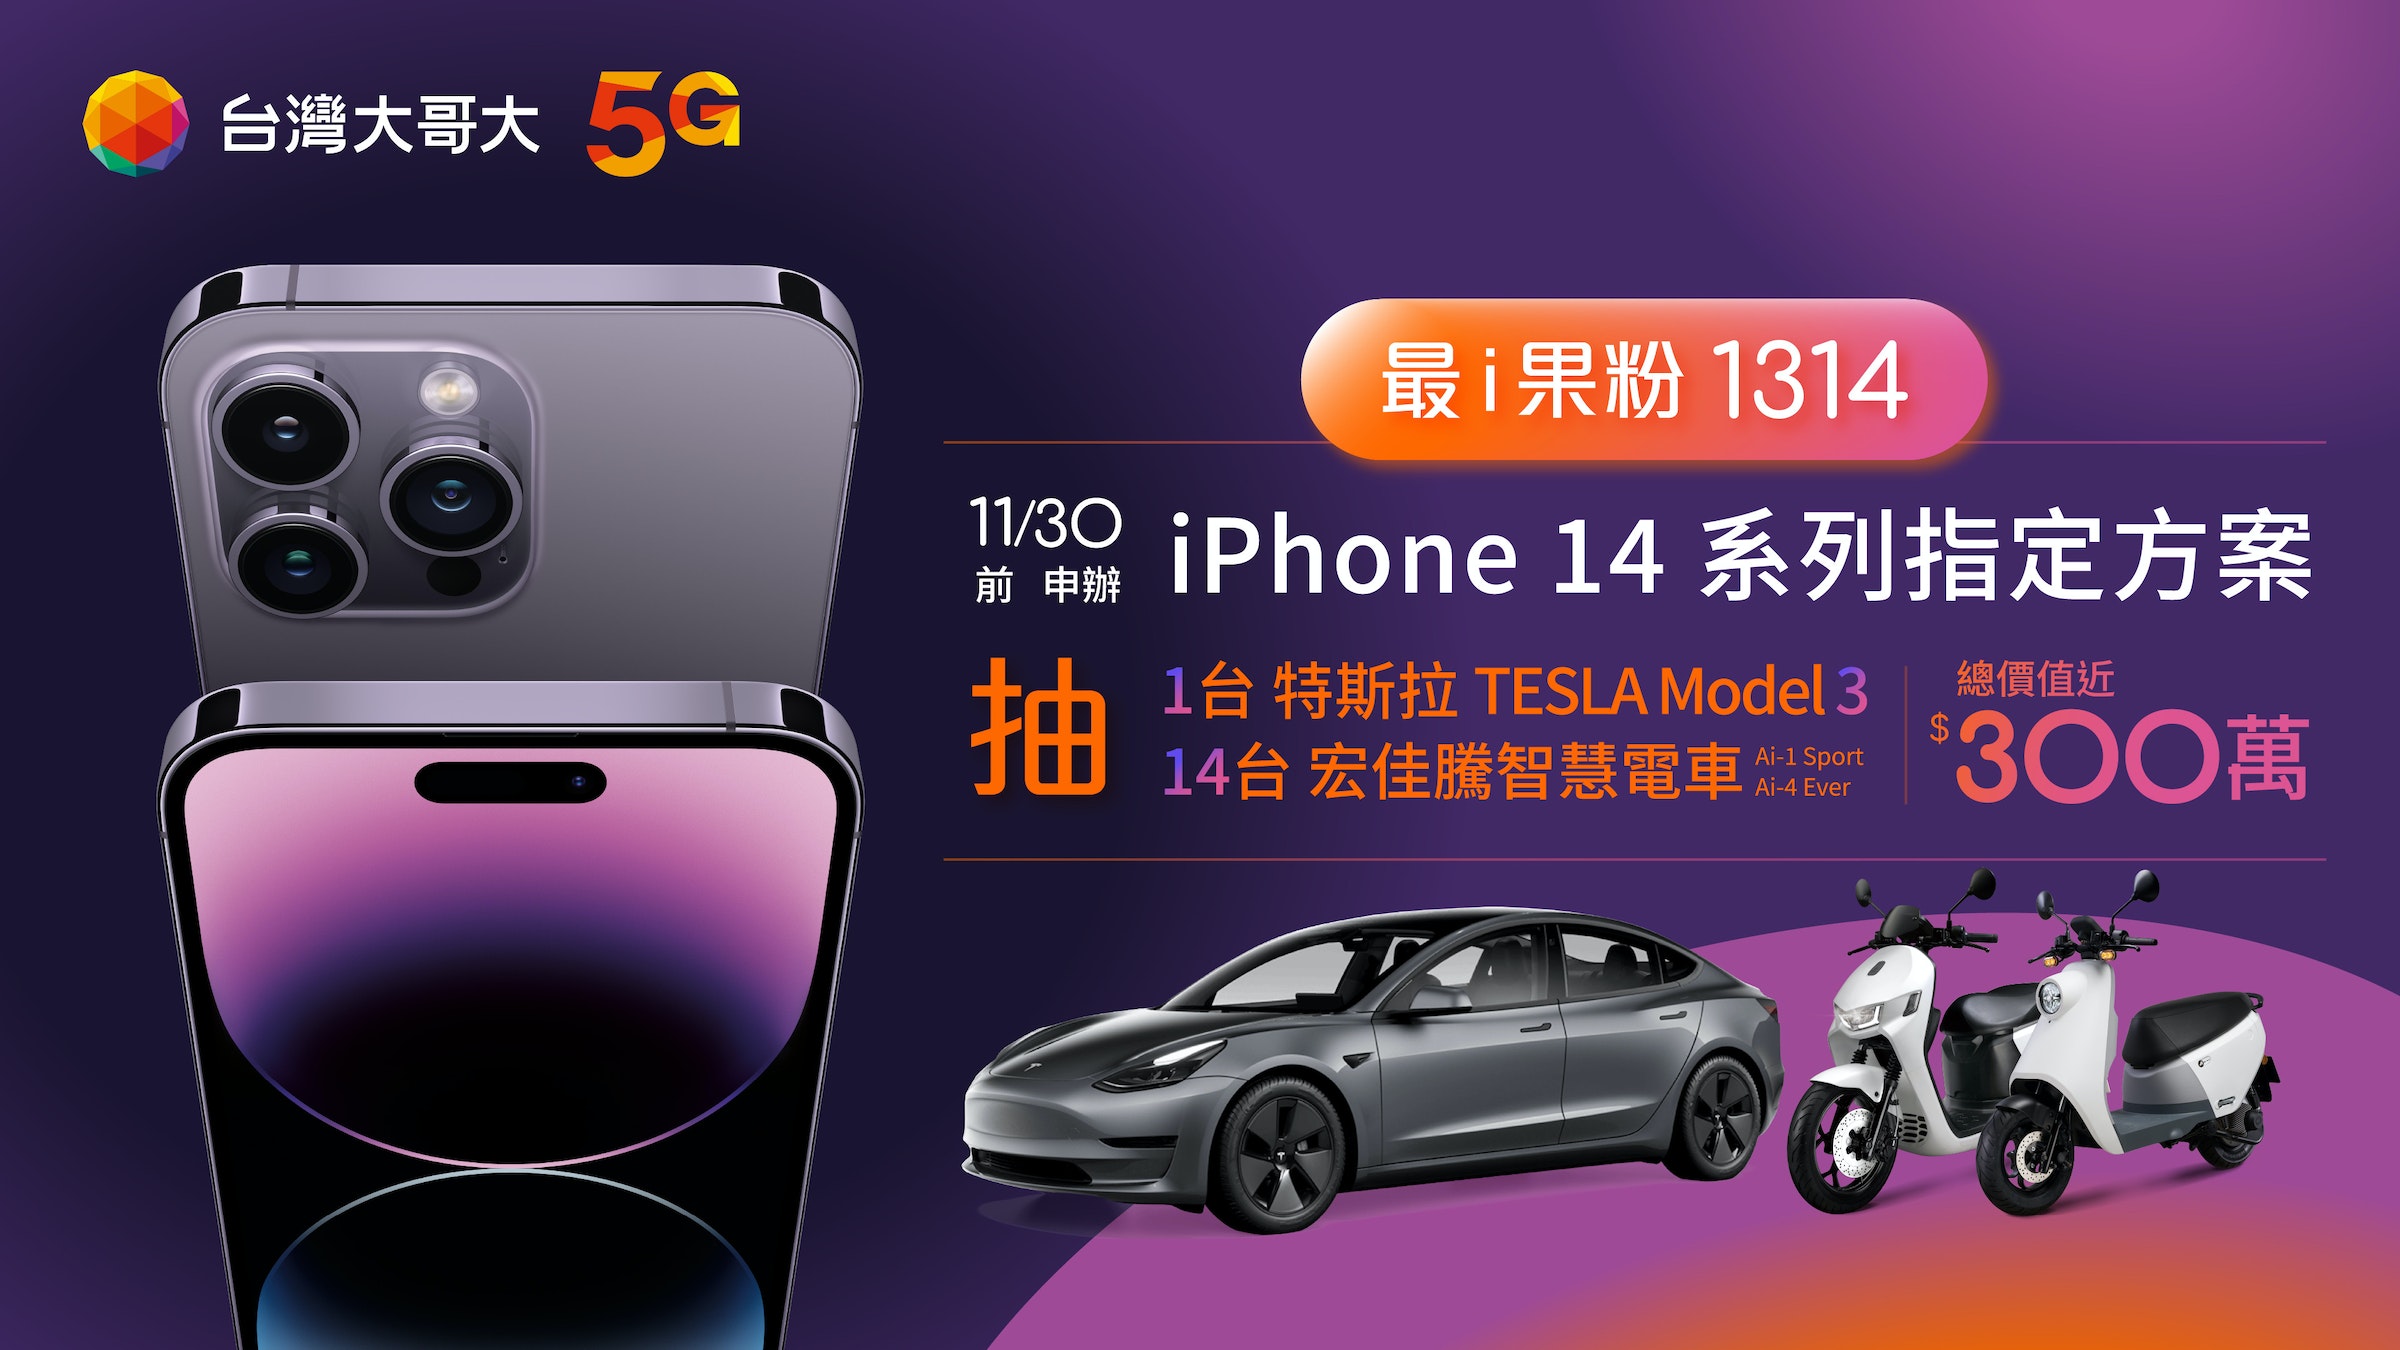 照片中提到了台灣大哥大 5G、O、11/30，跟台灣手機有關，包含了電子車、台灣、iPhone 14、移動電話